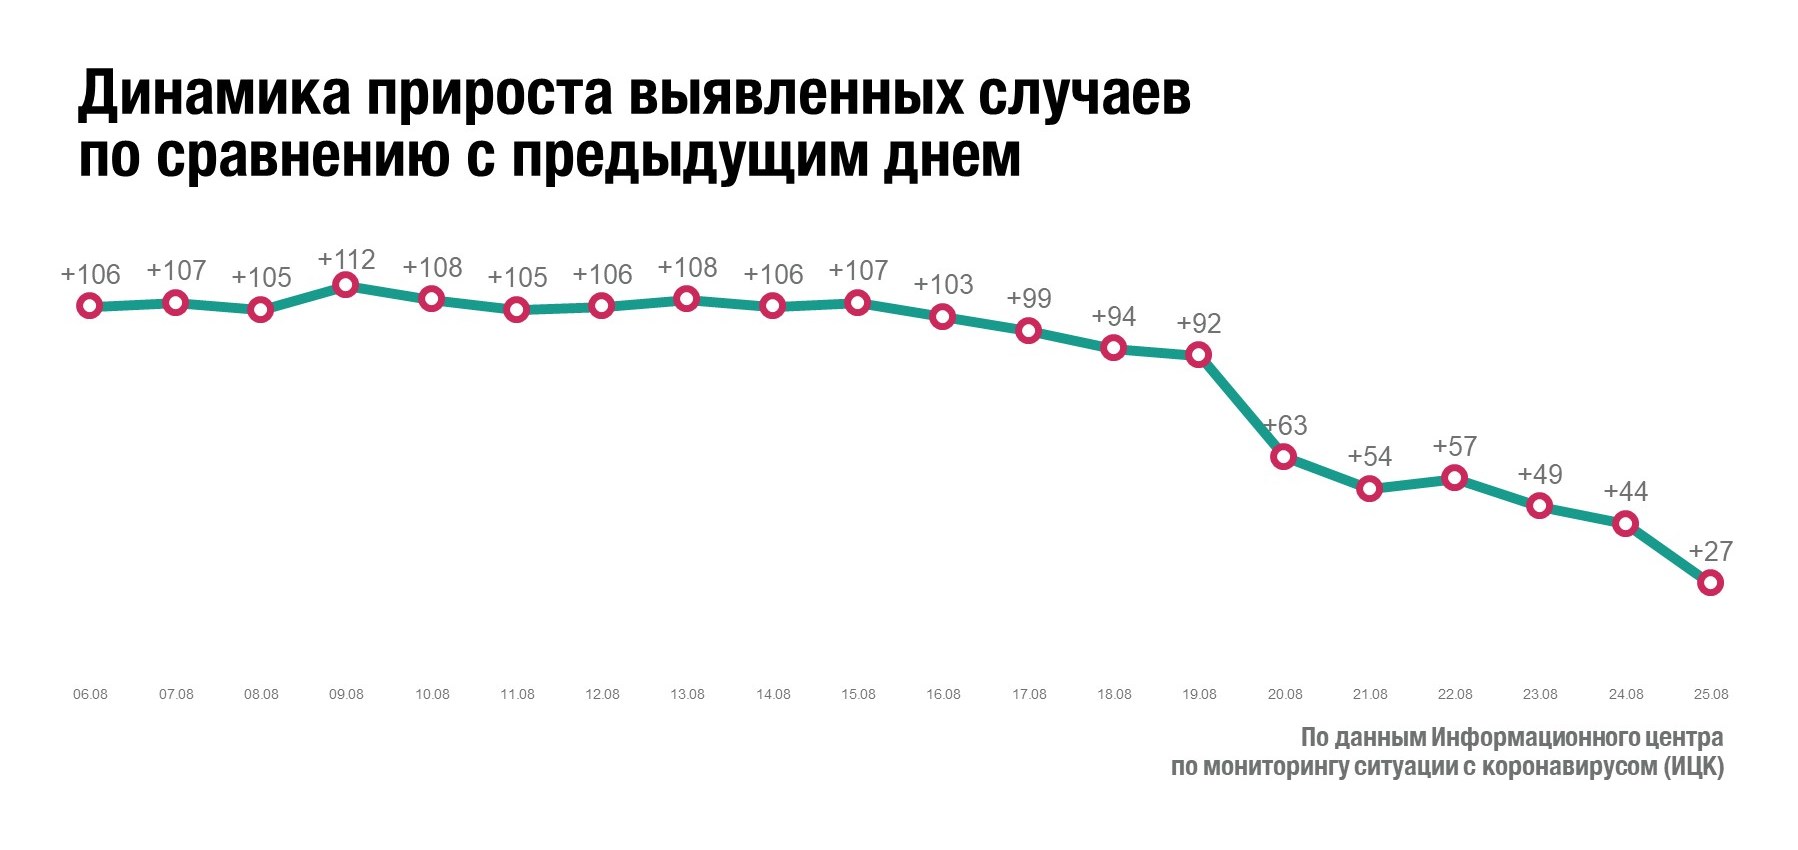 Омская область по приросту больных COVID-19 вернулась на уровень начала лета #Омск #Общество #Сегодня